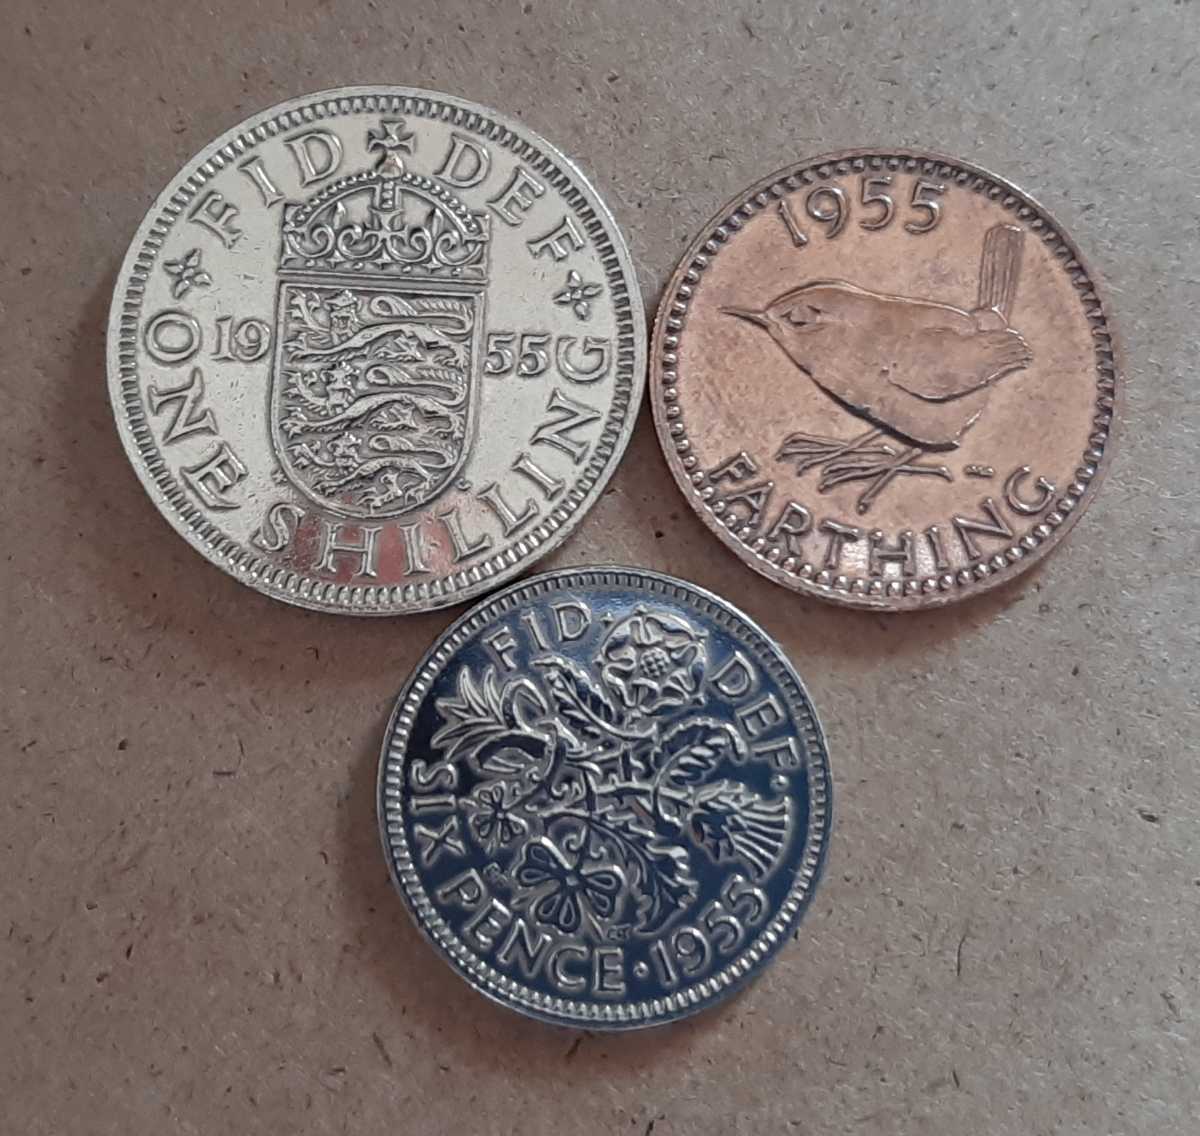 英国アンチークコイン3種類セント1. ラッキーウェディング幸せの6ペンス2. 小鳥デザインブロンズファジング3. ライオンデザインシリング_画像1